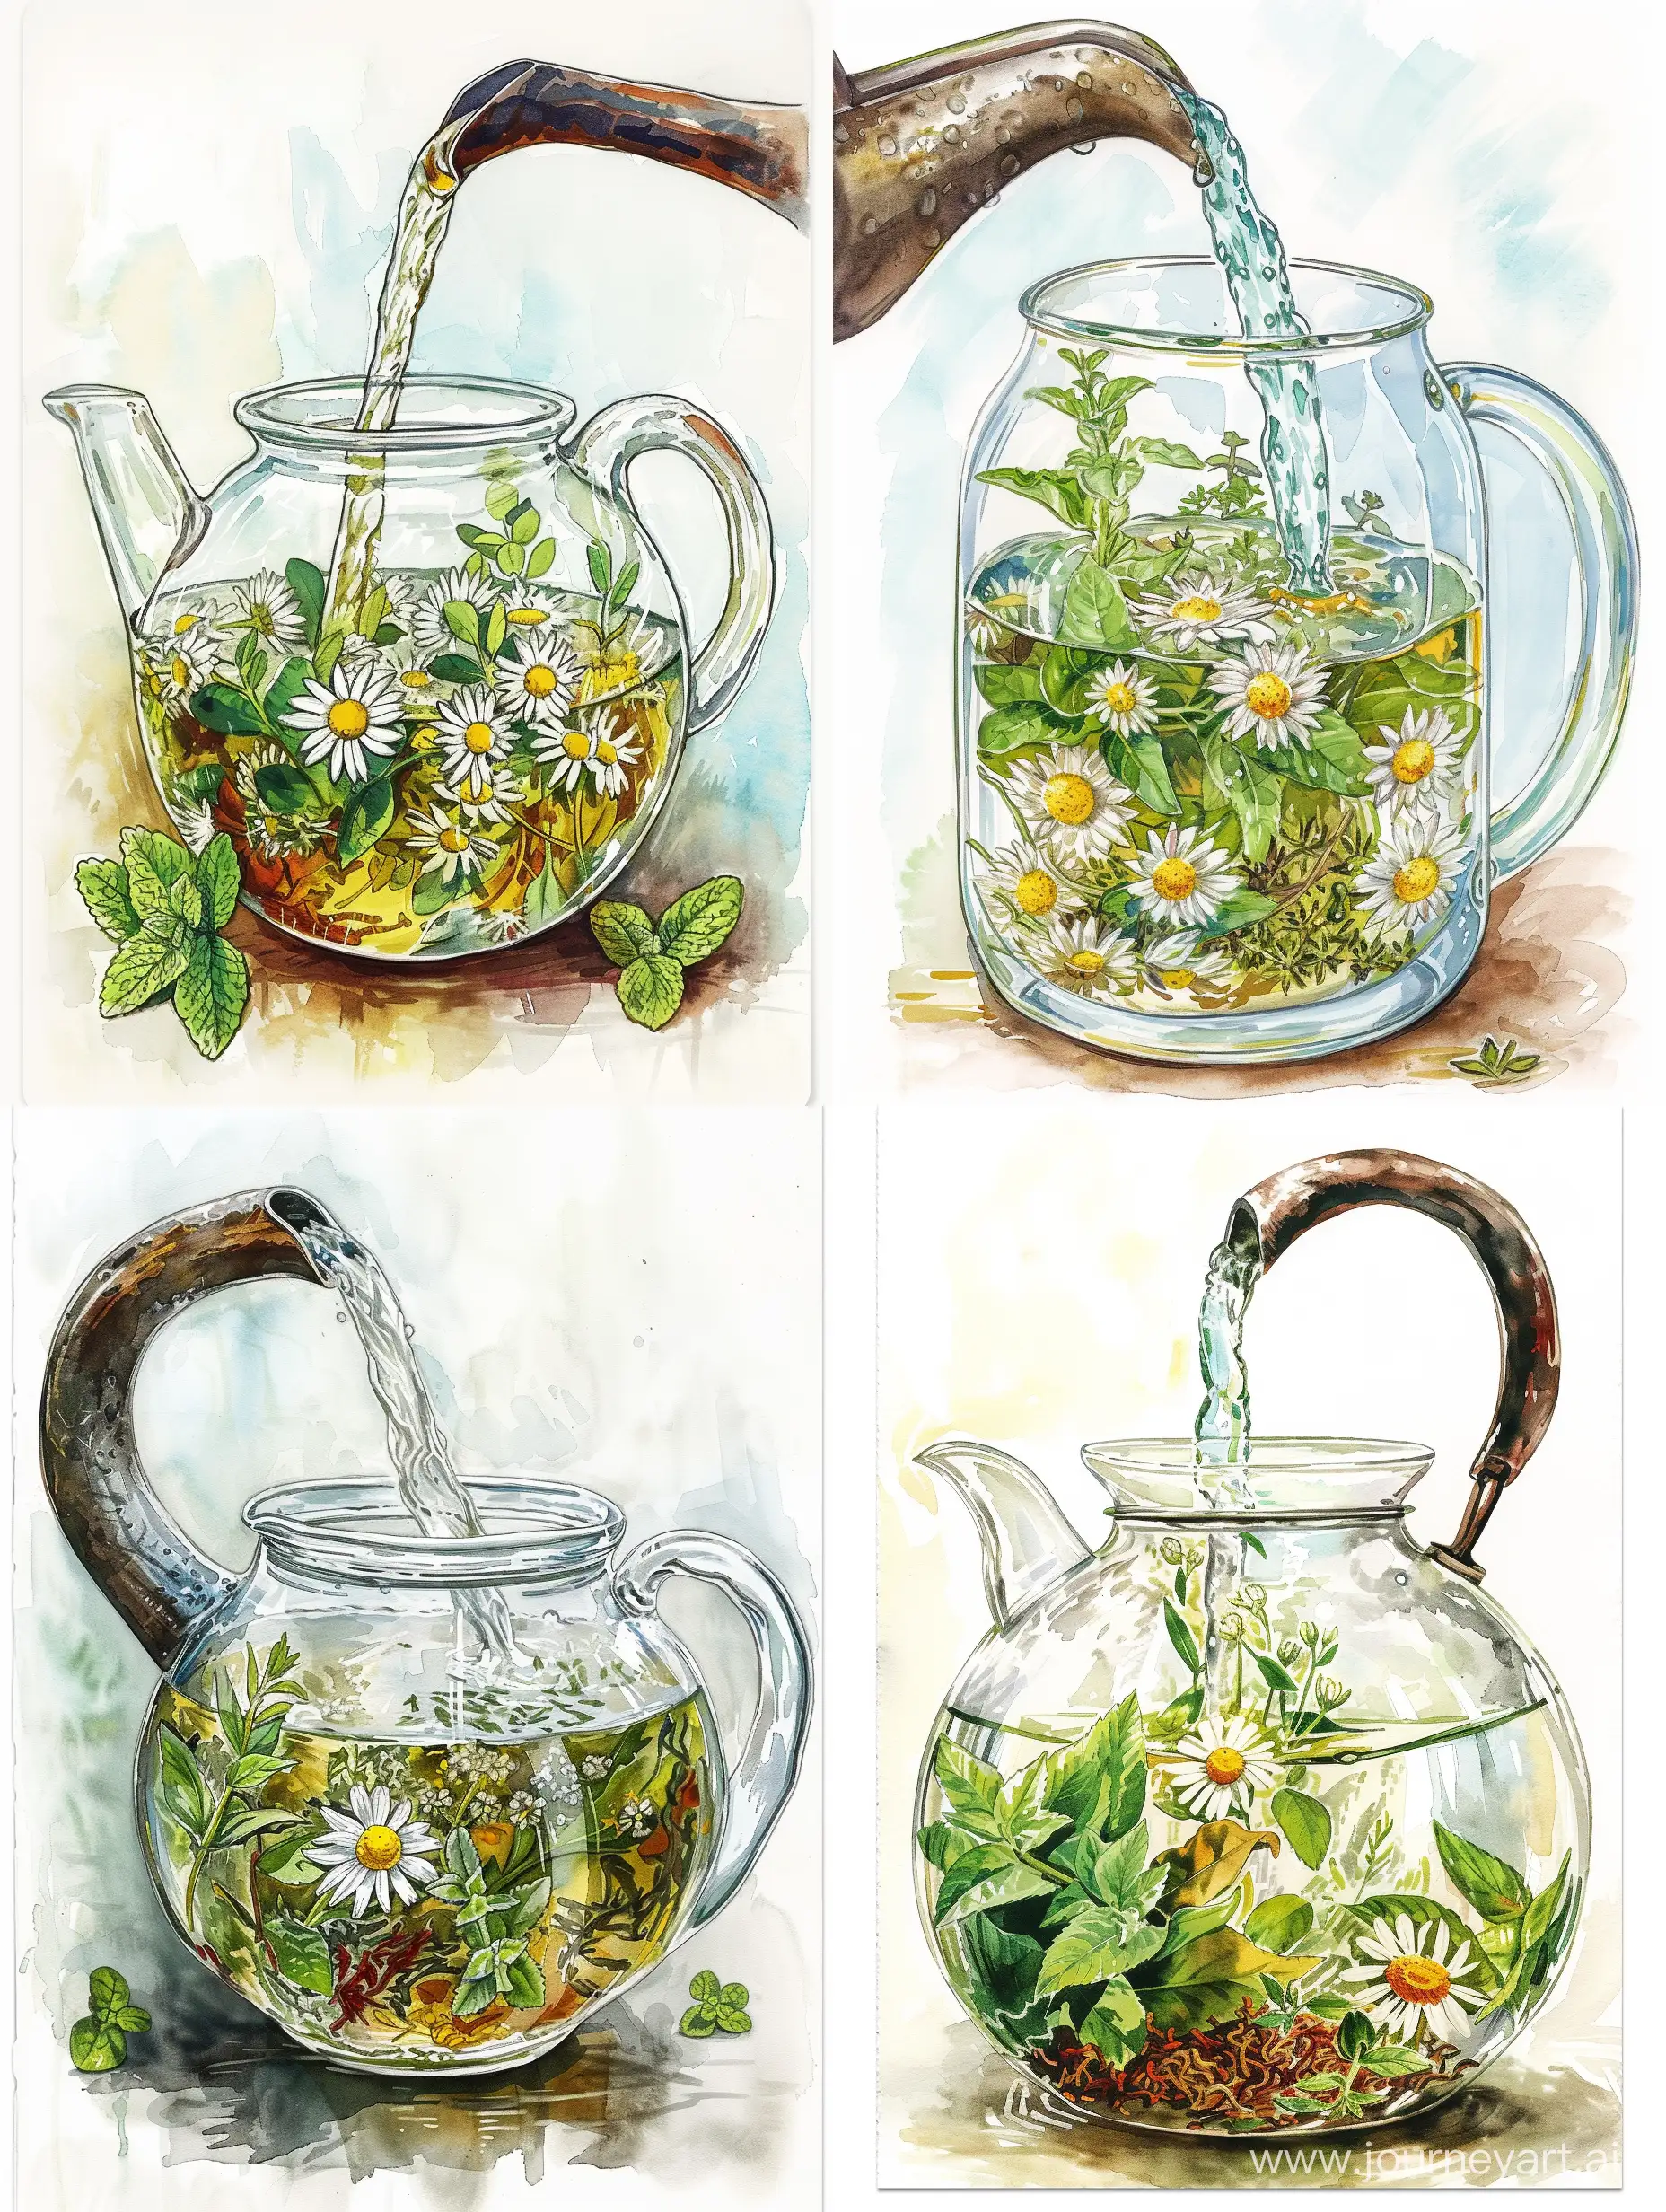 Открытка. Надпись: Поздравляем с днём травяного чая. Нарисовано: Чайник стеклянный заварочный, прозрачный, с ромашкой, иван-чаем, чаюрецом и мятой внутри, в него льëтся кипяток из чугунного чайника. Акварель